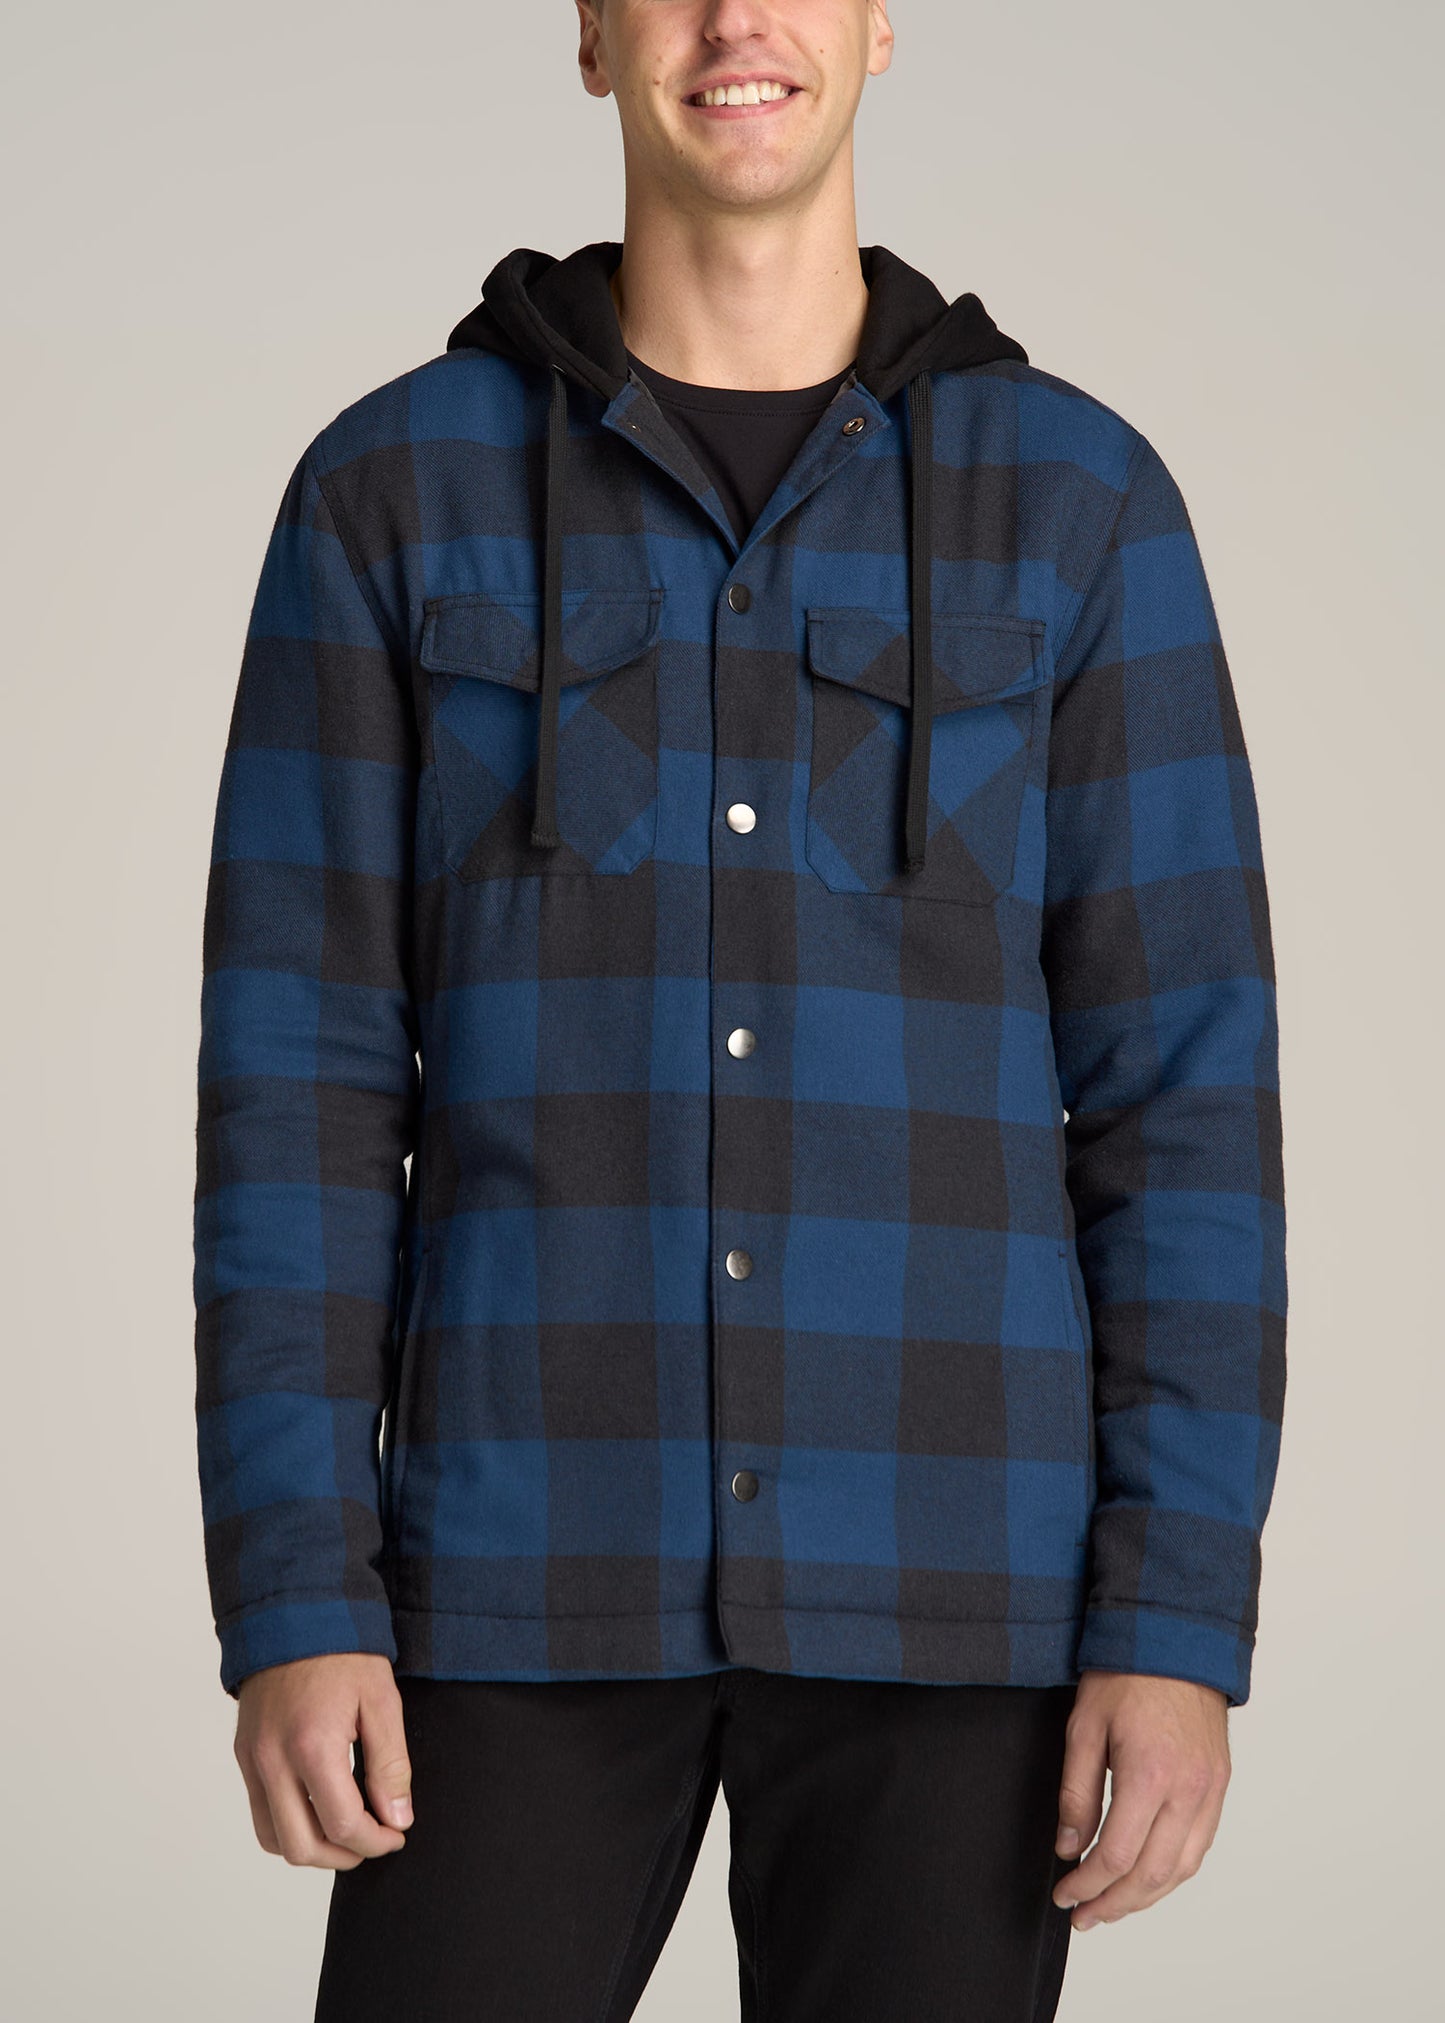 Men's Heavy-Duty Flannel Work Shirt Jacket